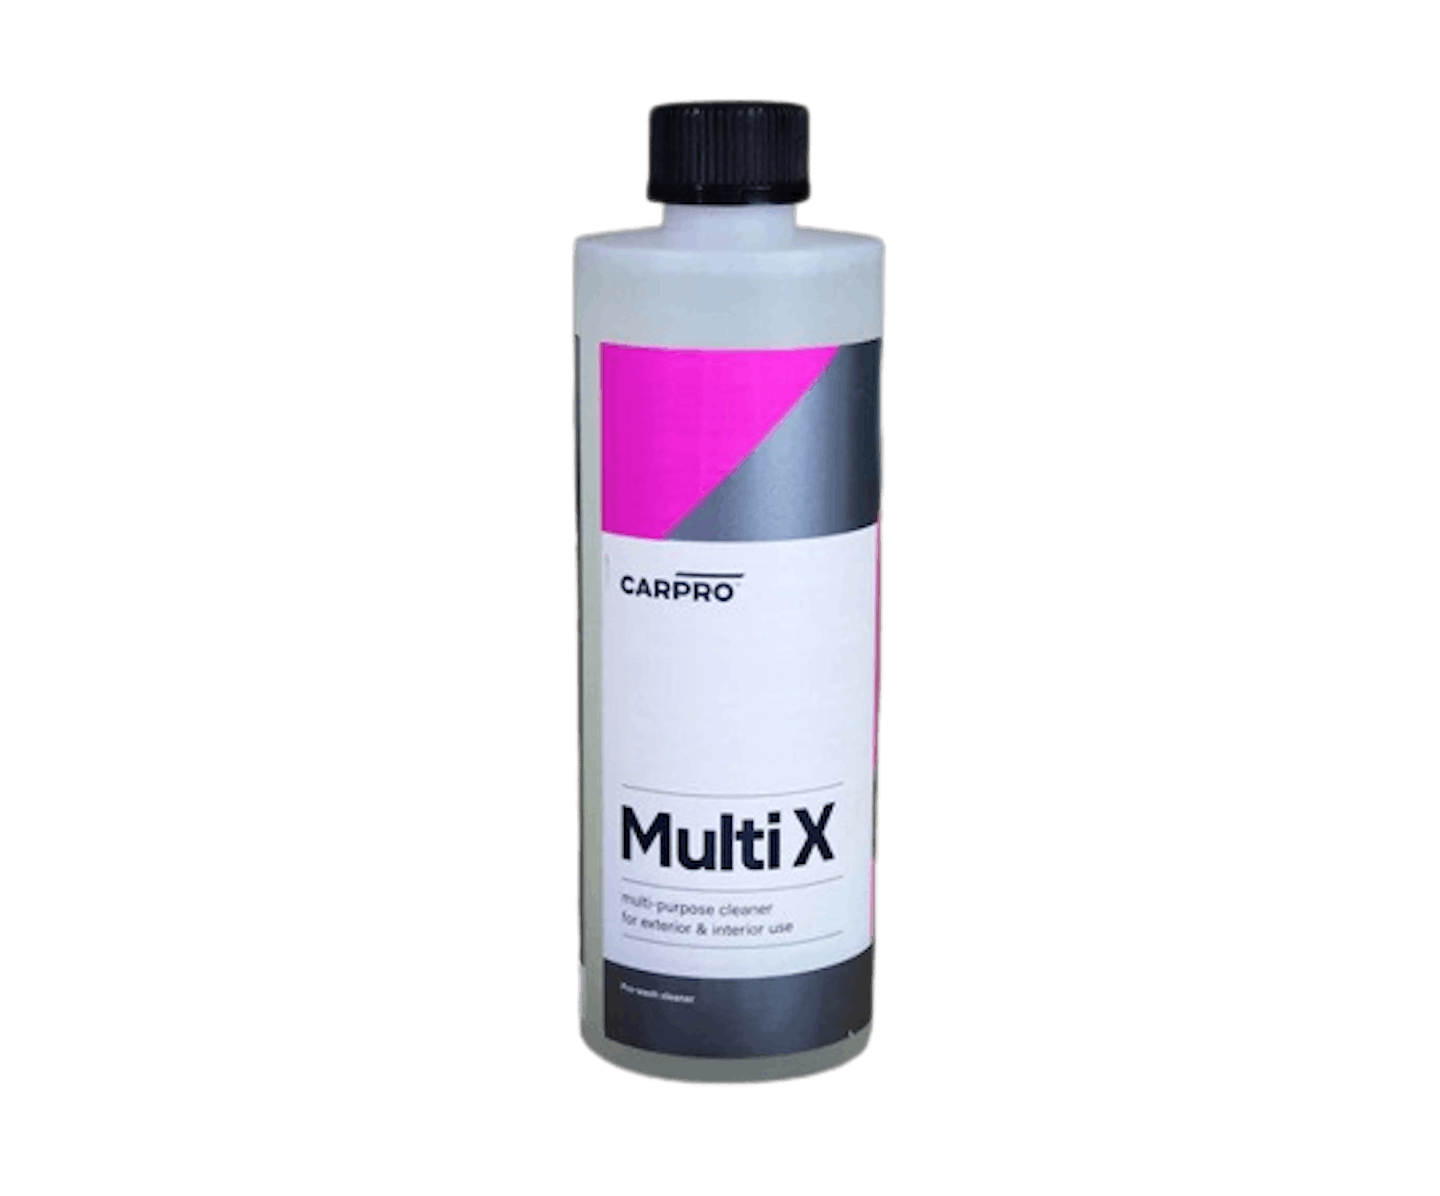 CARPRO MultiX Multi-Purpose Cleaner